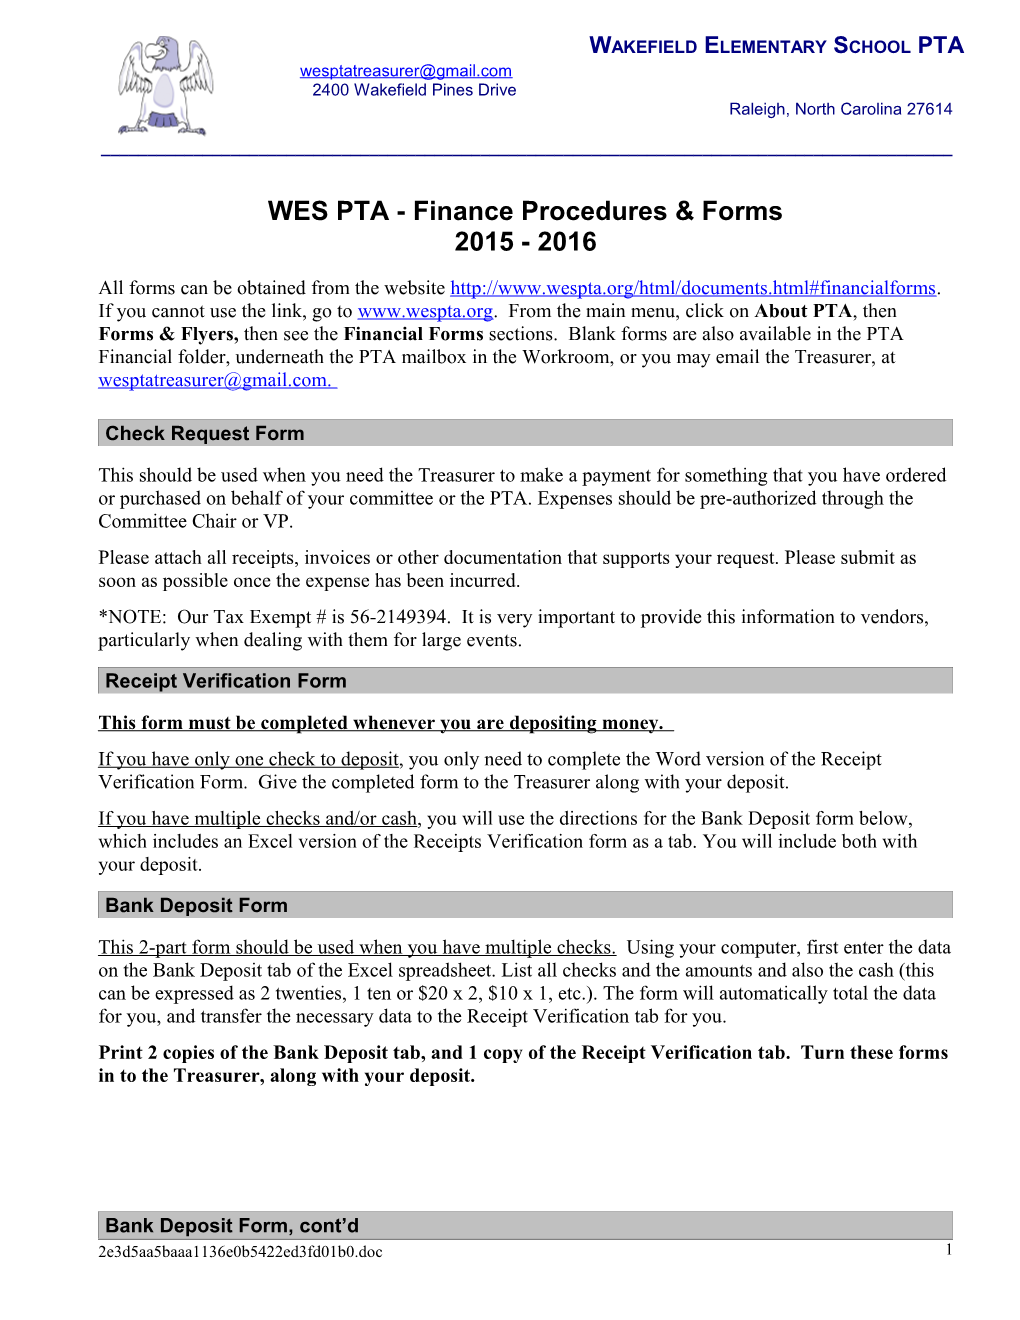 WES PTA - Finance Procedures & Forms